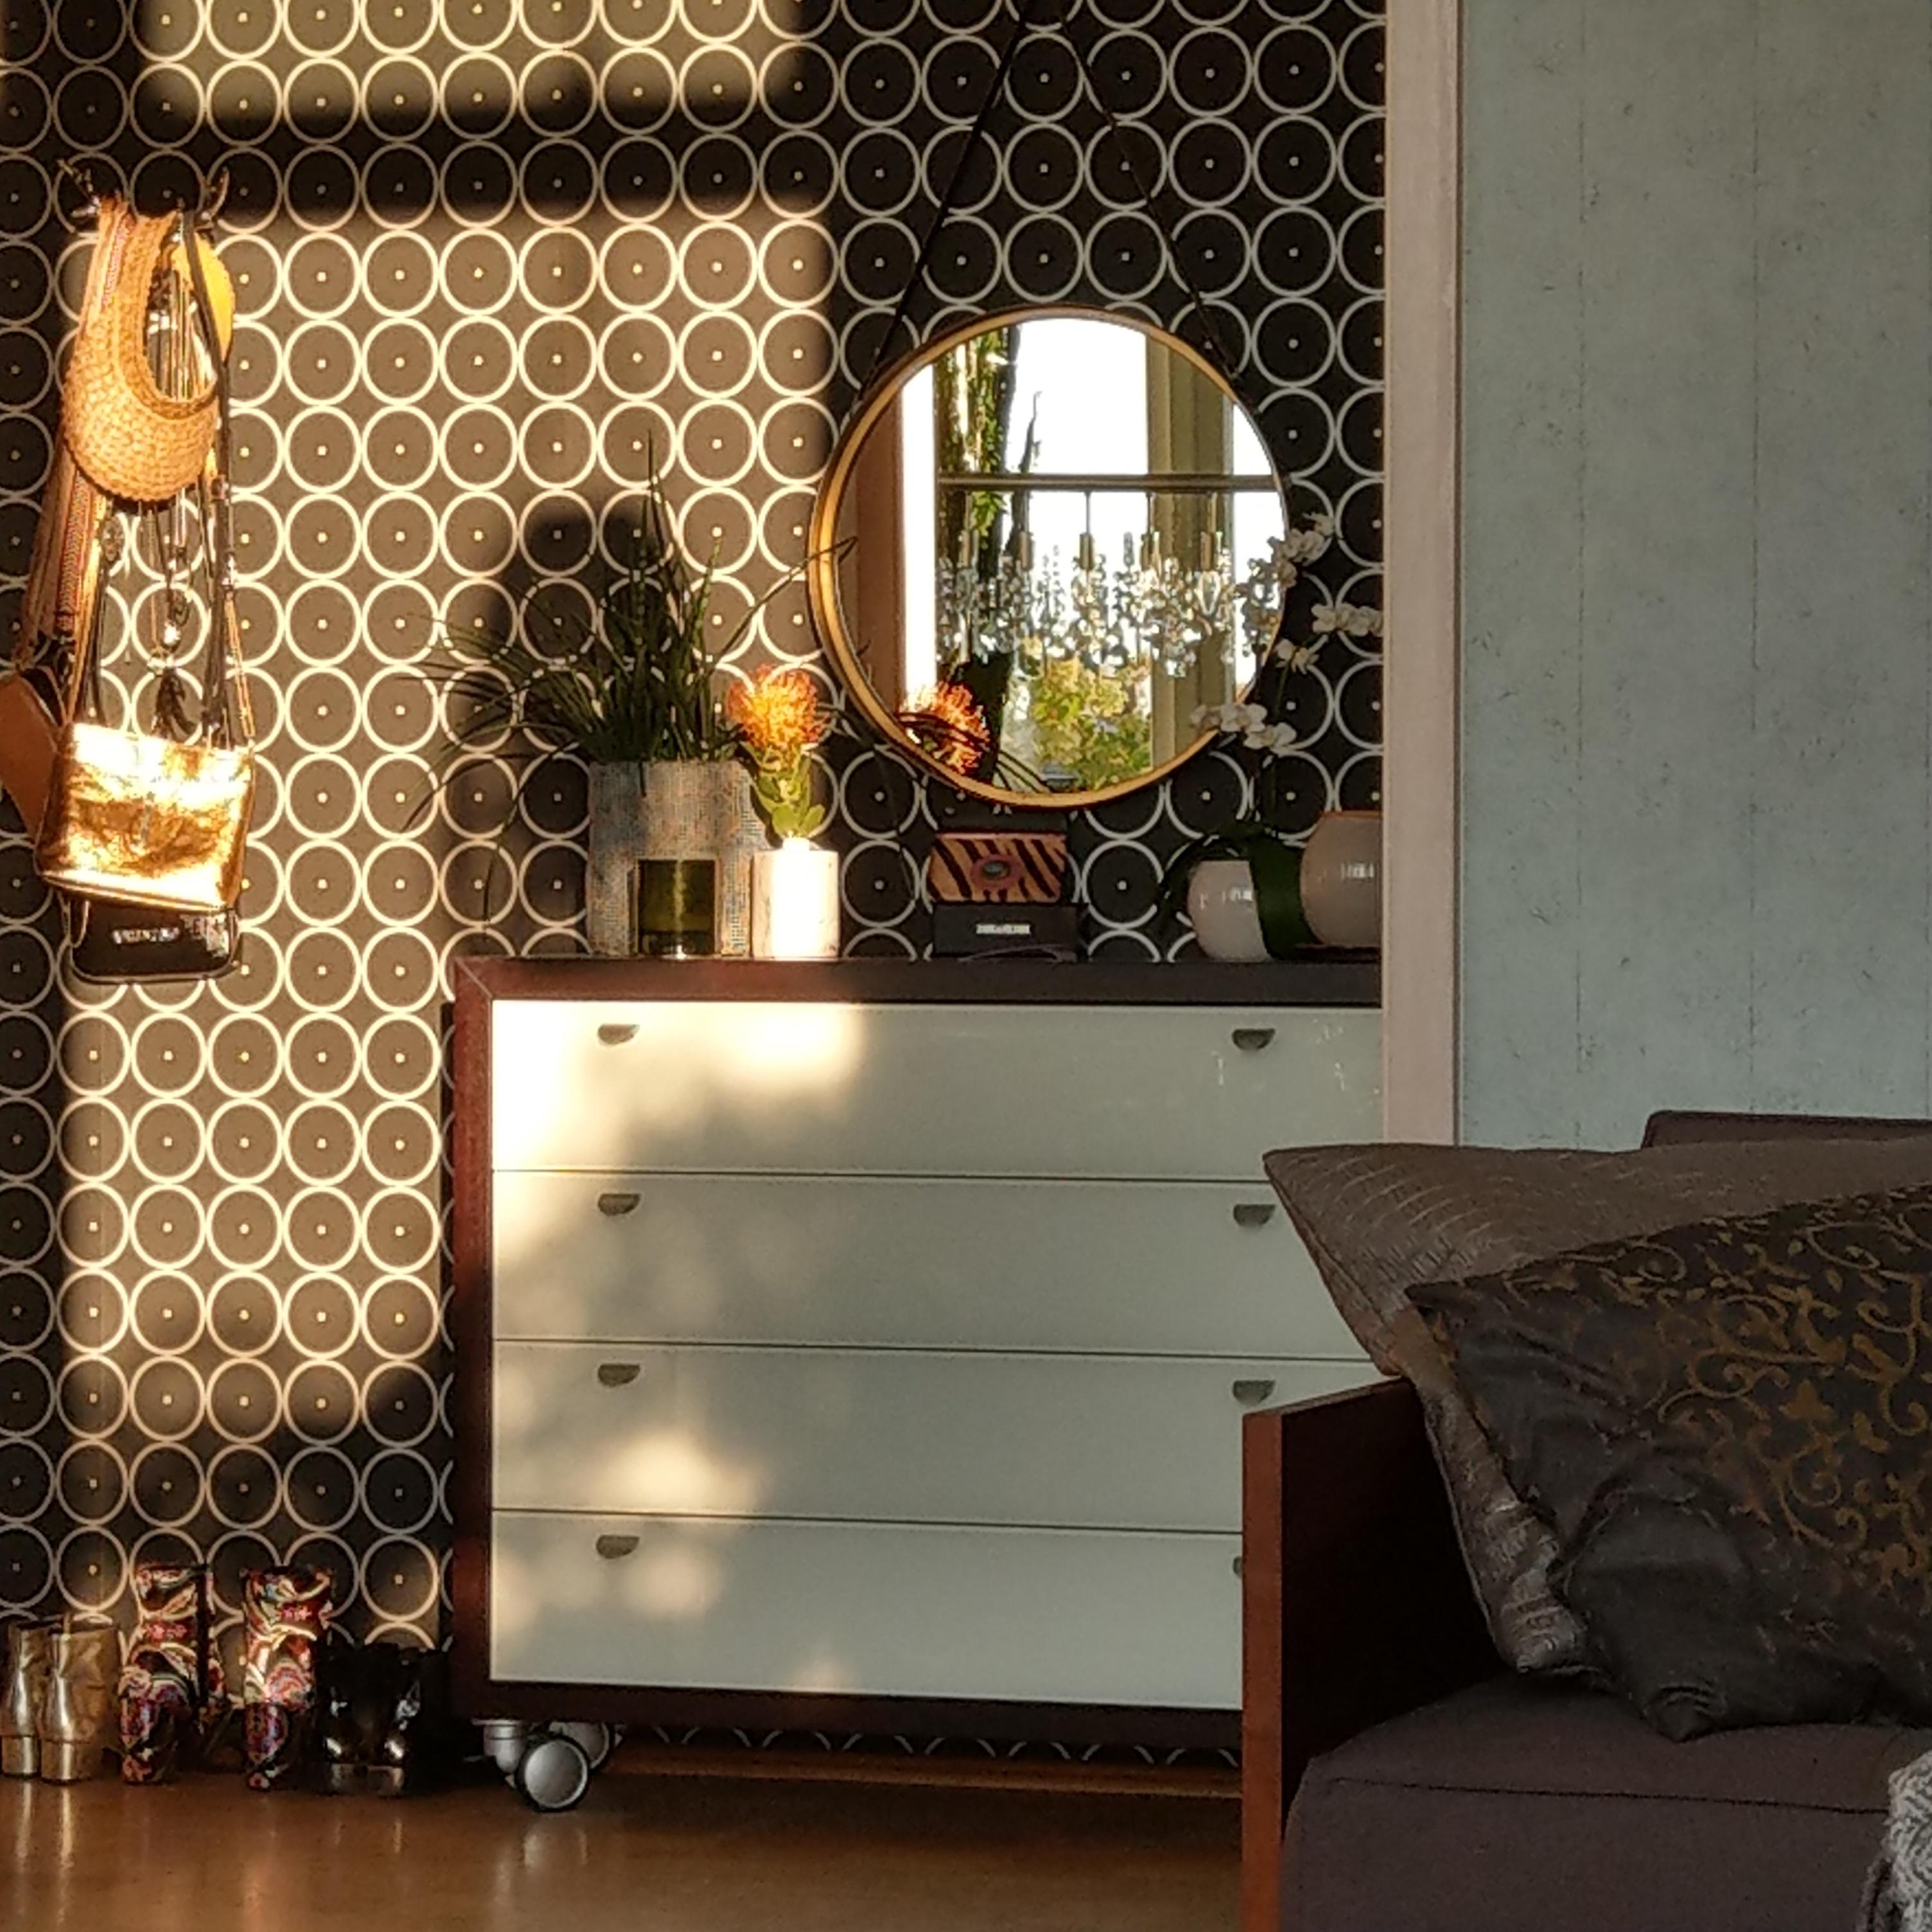 Der Flur aus Sicht vom Wohnzimmer 

#tapeten #shine # mirror #iloveshoes # reflection